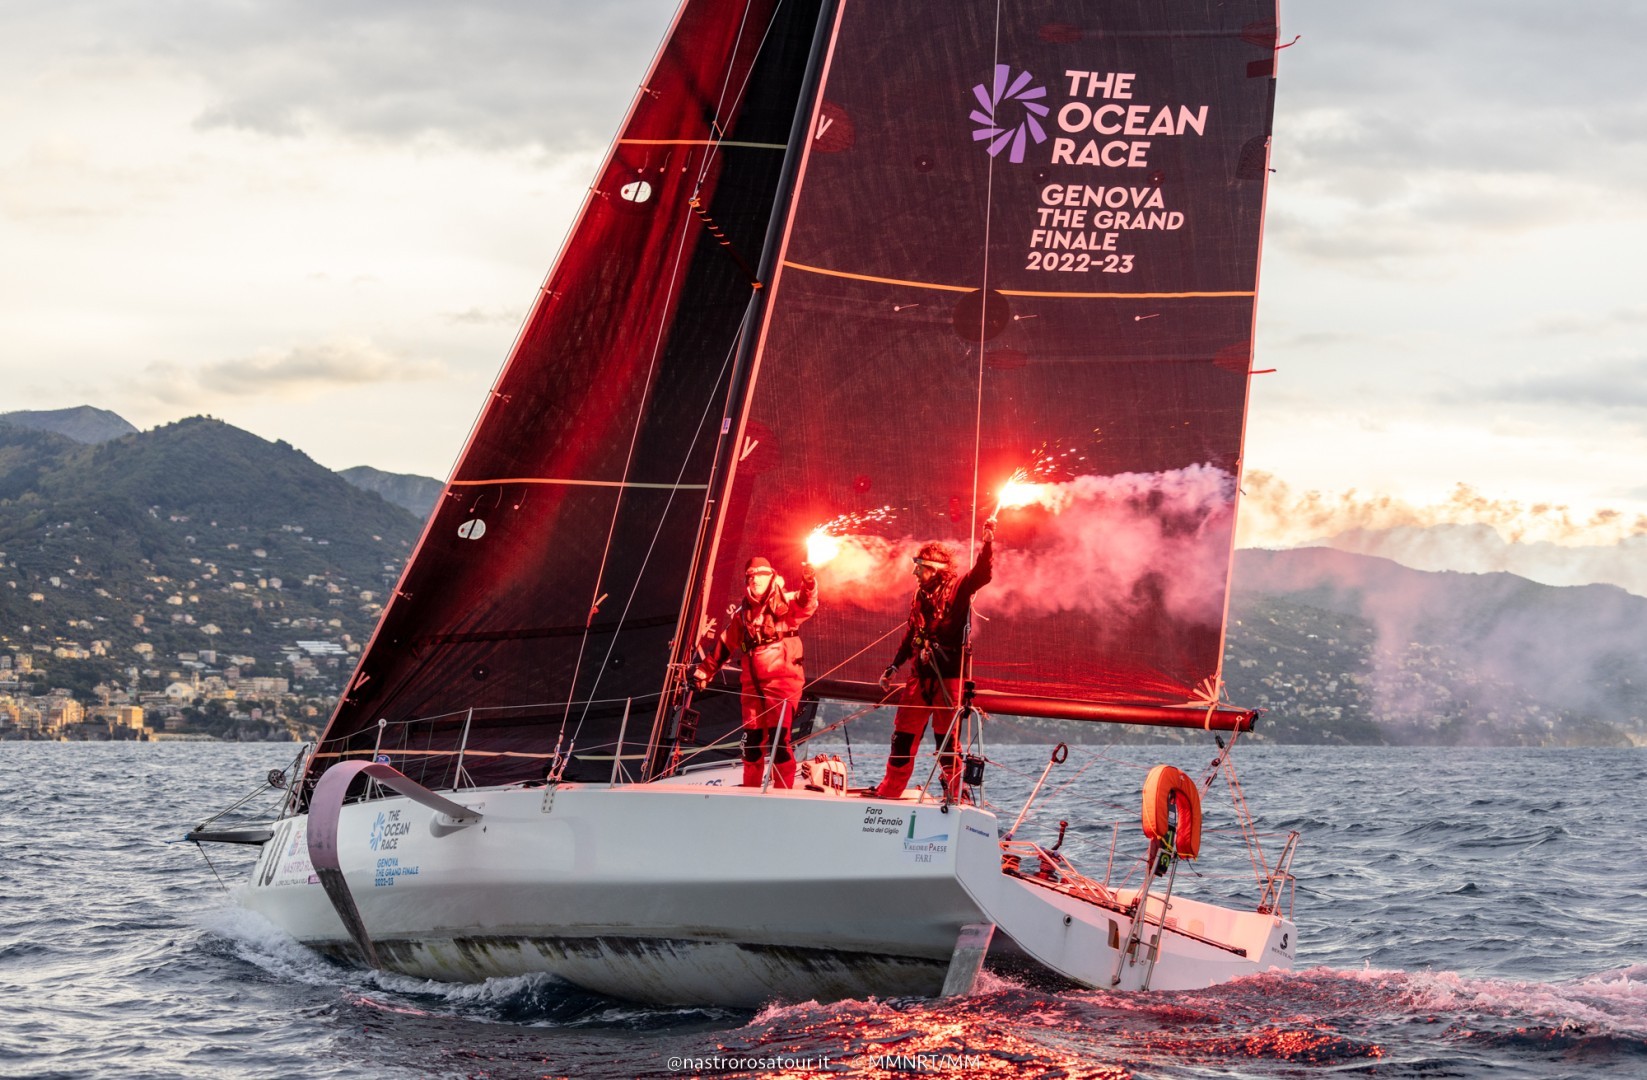 Marina Militare Nastro Rosa Veloce, The Ocean Race-Genoa Grand Finale wins in Genoa